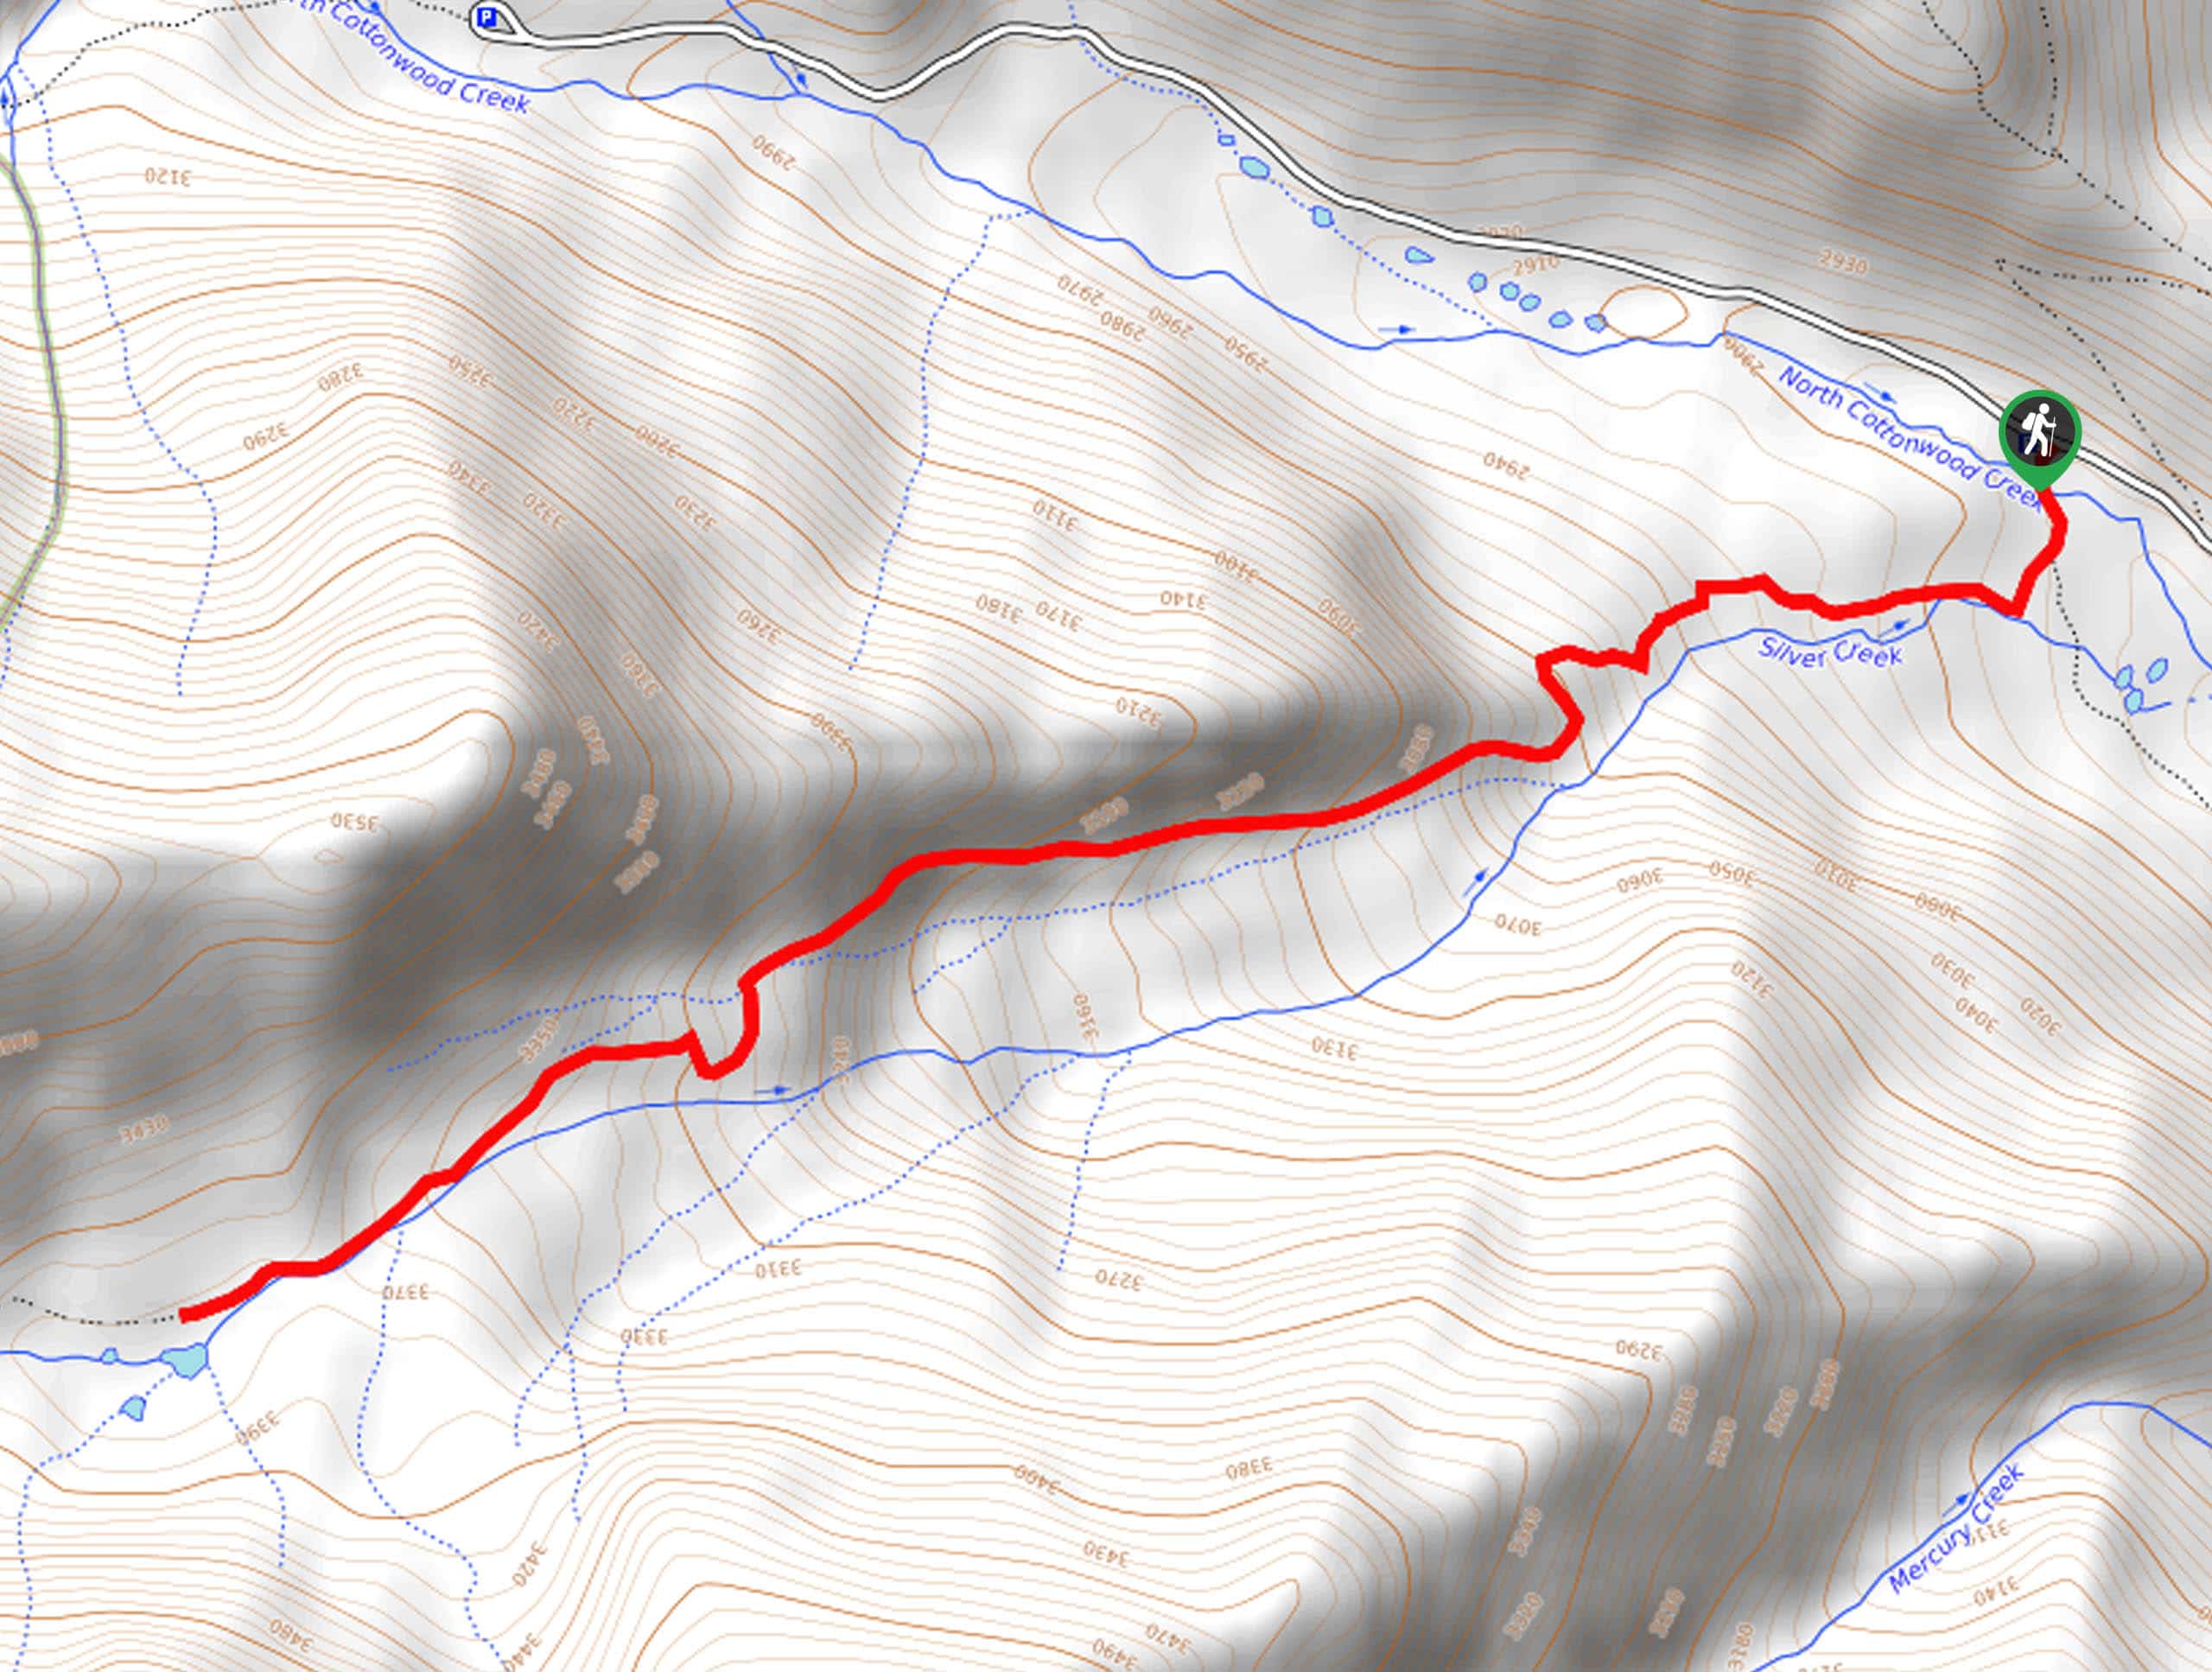 Silver Creek Trail Map